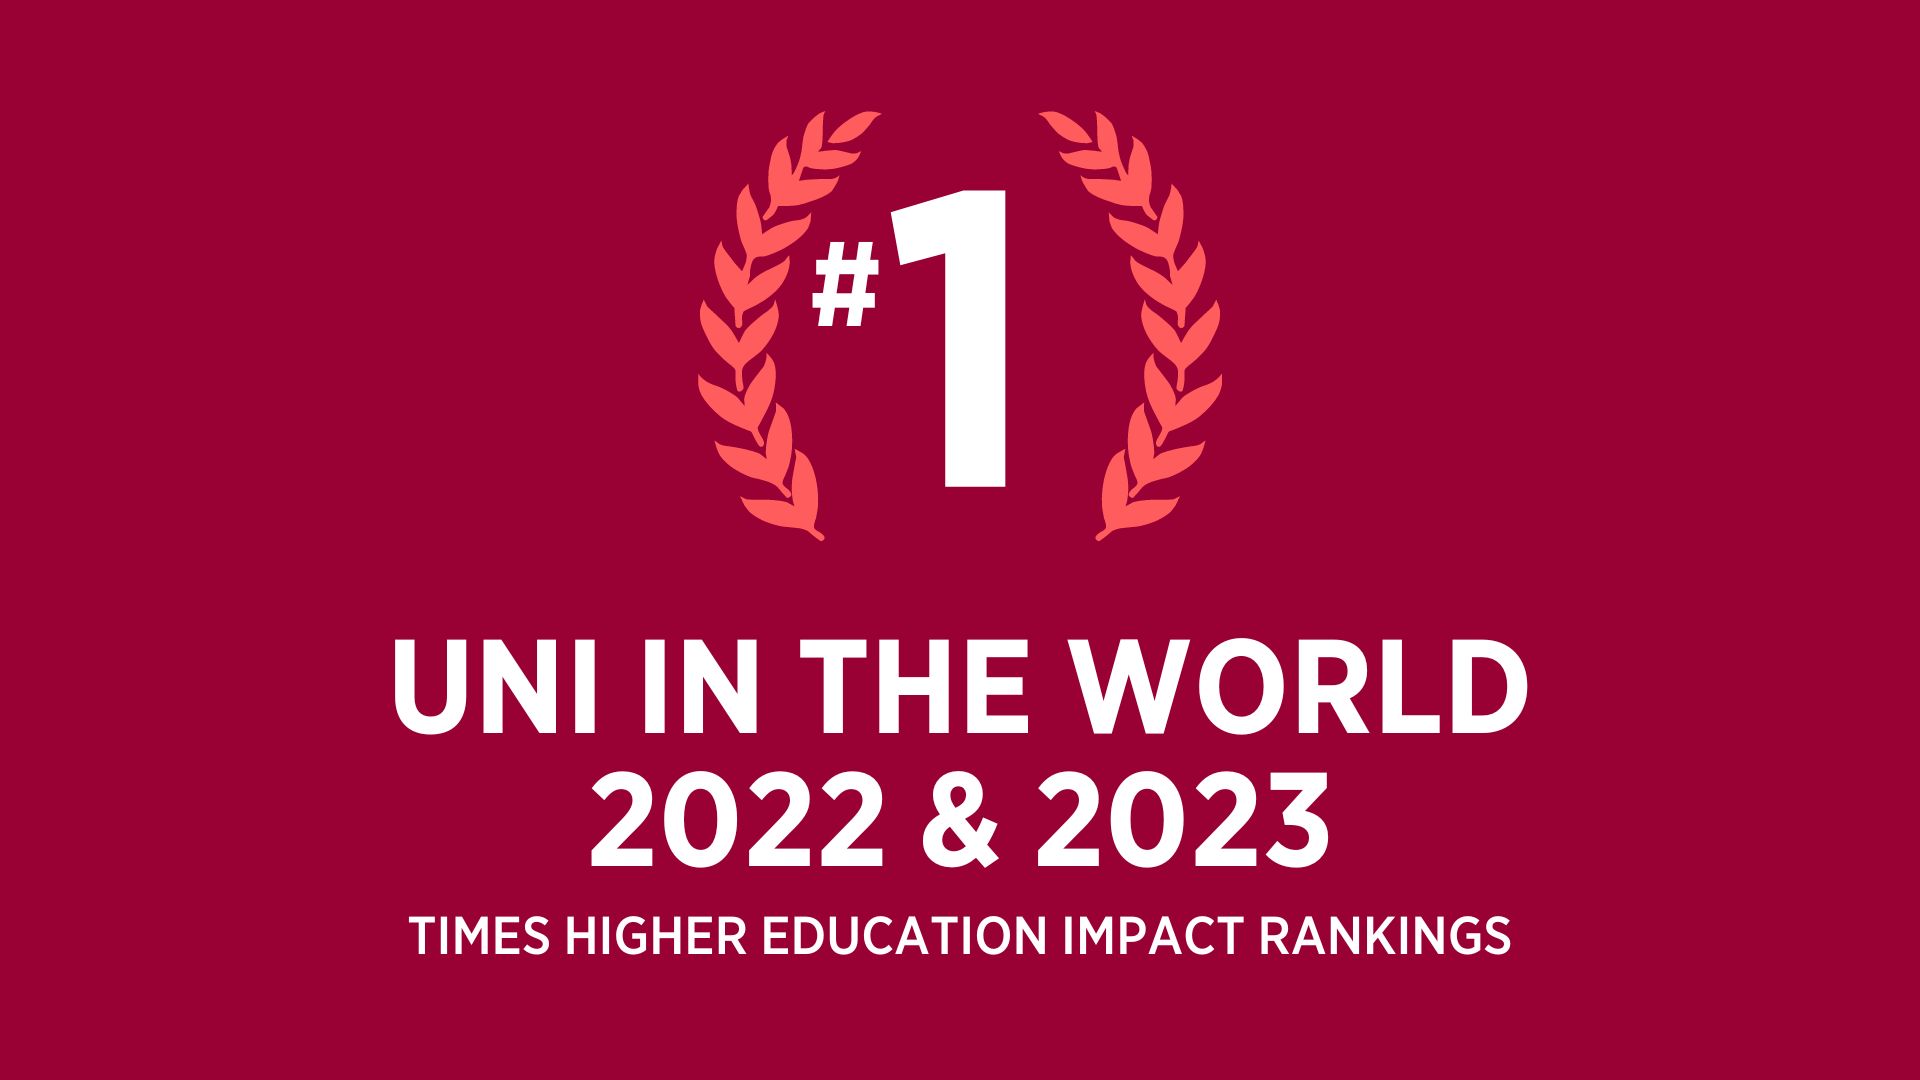 Đại học Western Sydney đứng đầu Bảng xếp hạng Ảnh hưởng toàn cầu trong hai năm liên tiếp